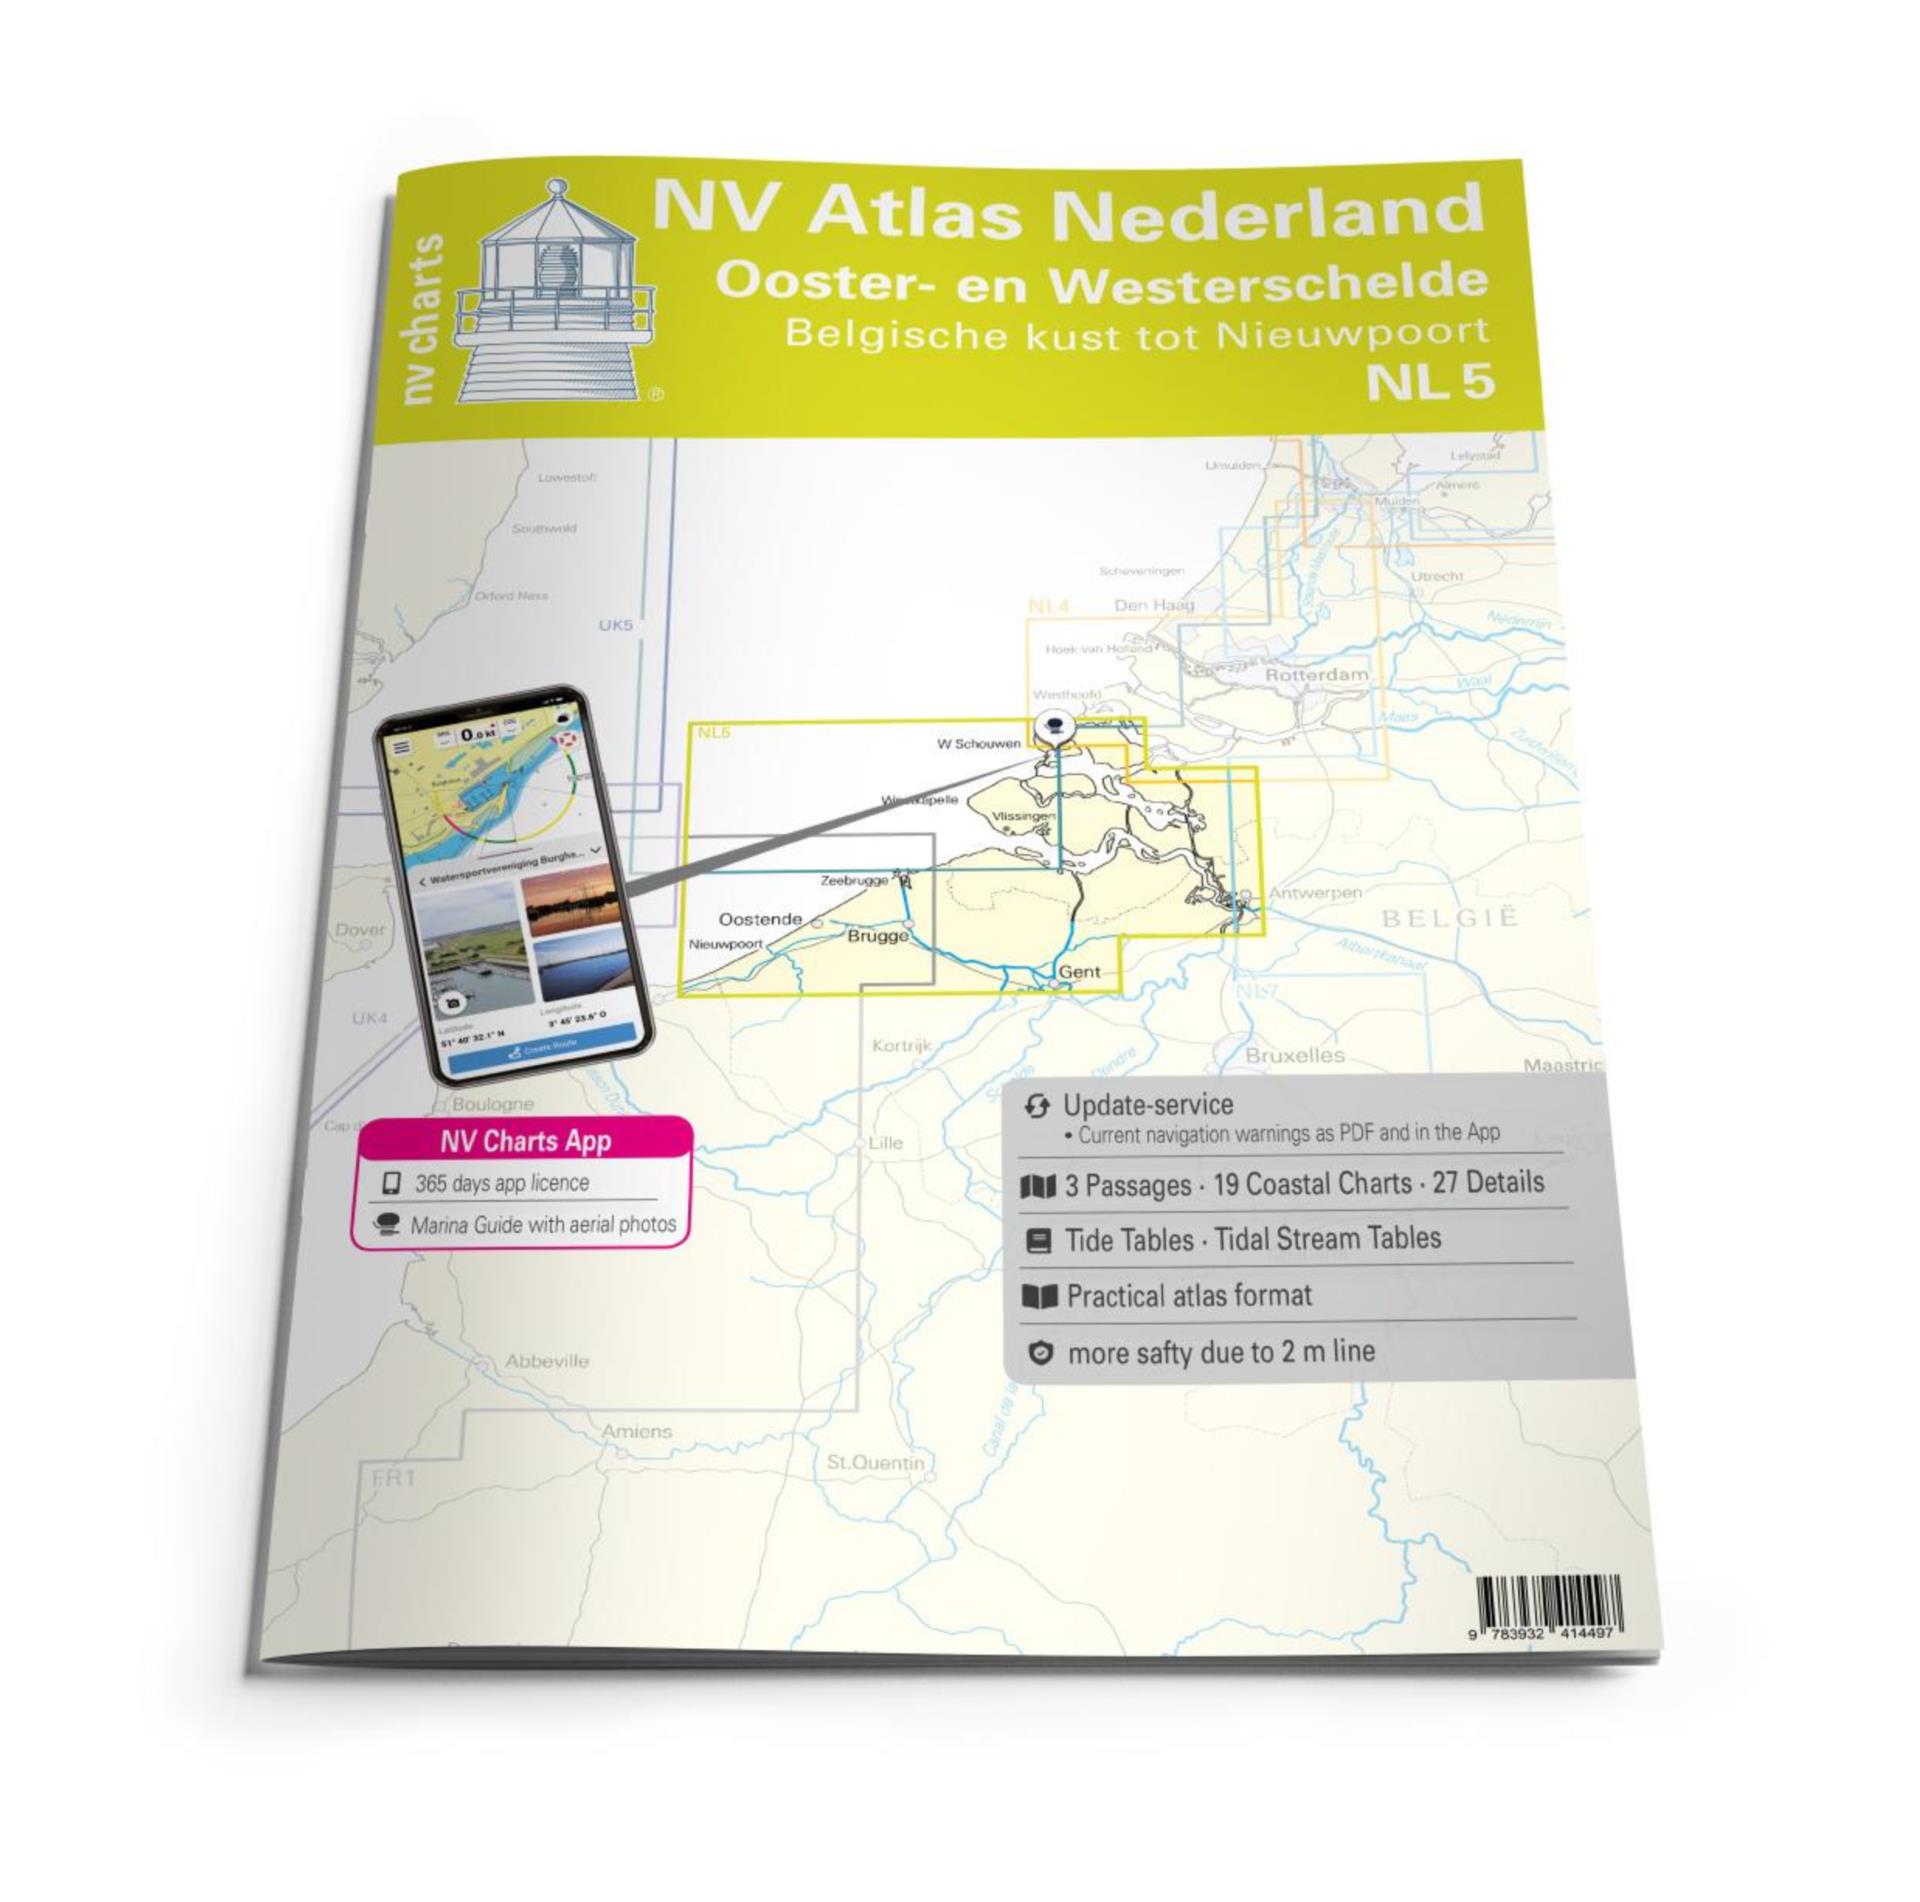 NV Atlas Niederlande NL5 - Ooster- en Westerschelde